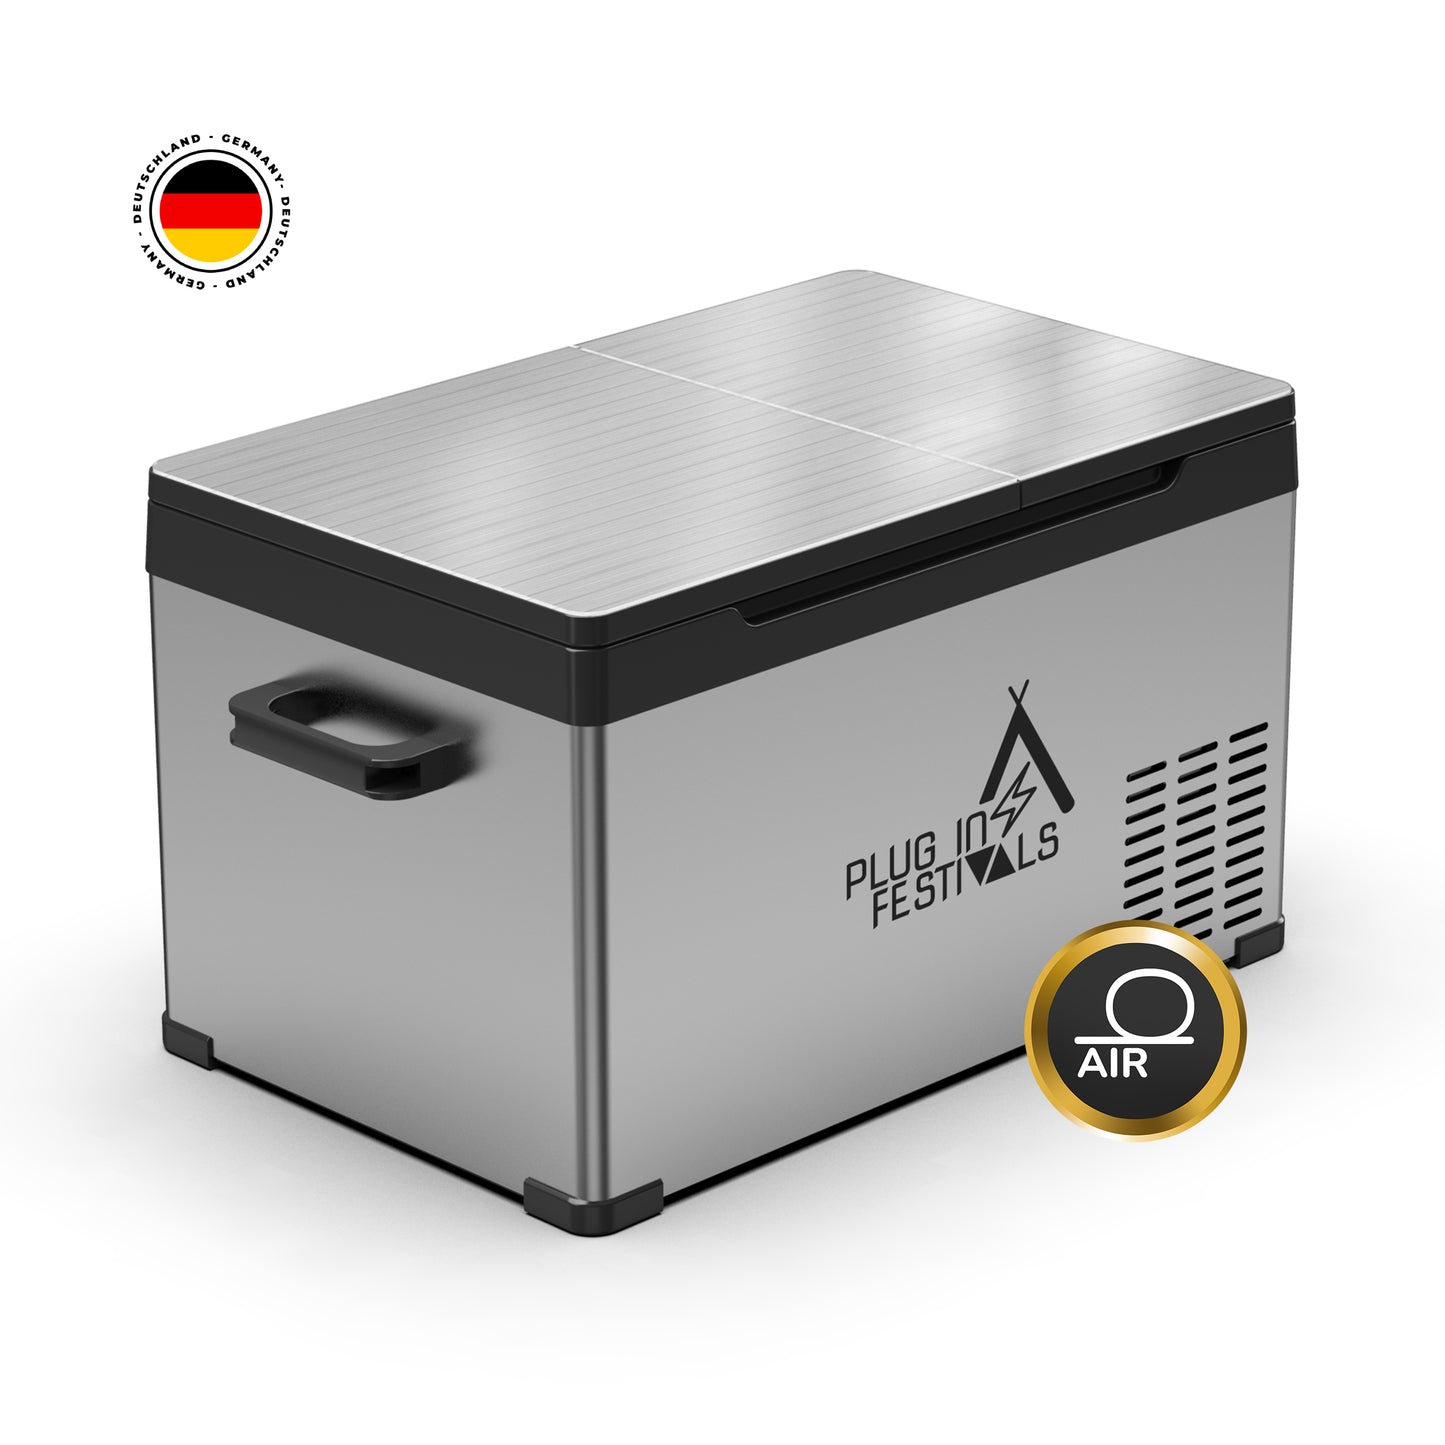 DUAL IceCube Plug-in Festivals Kompressorkühlbox 2 Kühlbereiche mit App-Steuerung